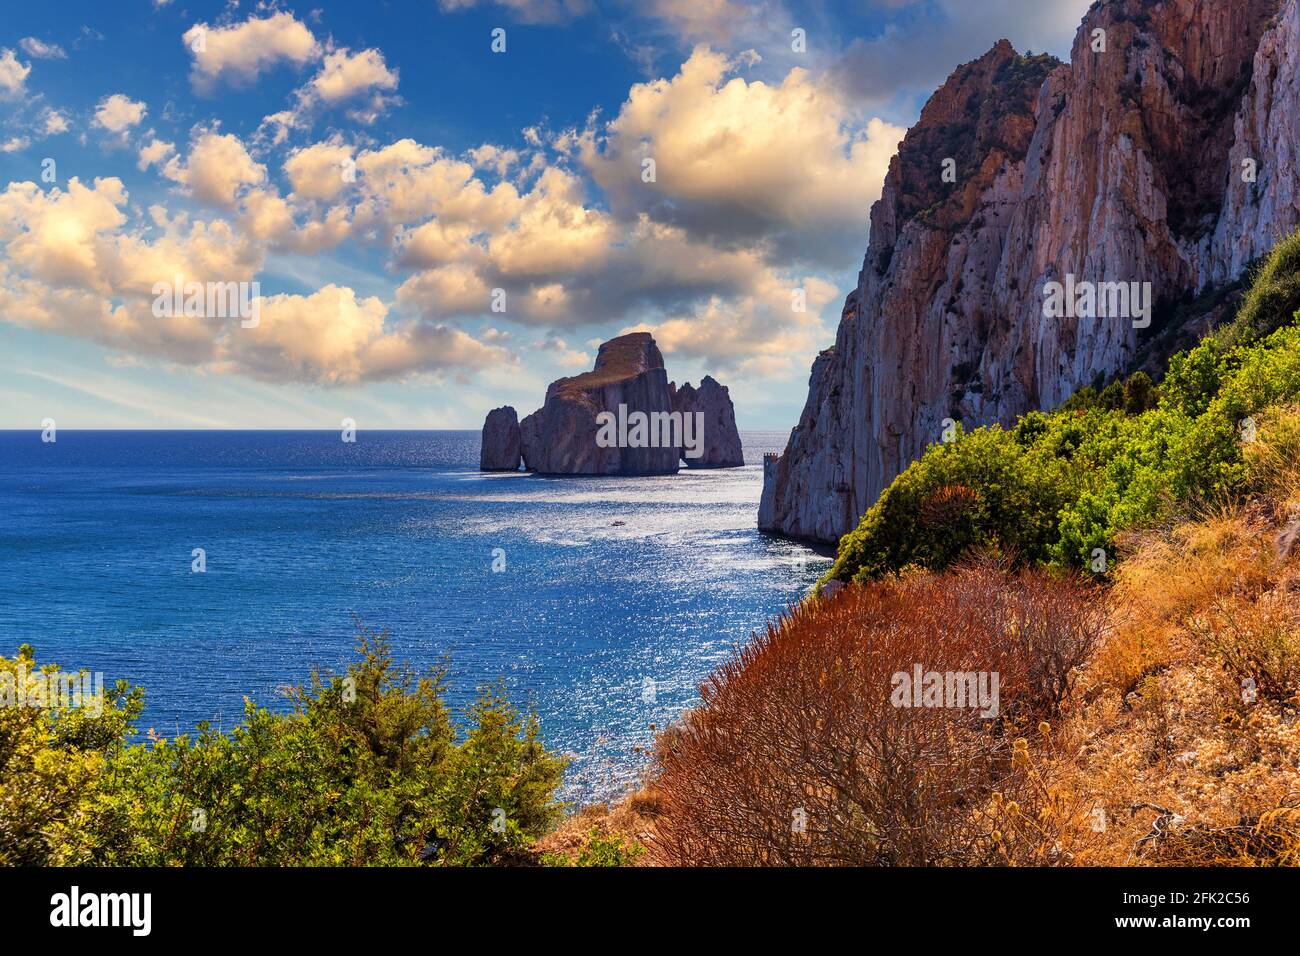 Premium Photo  Beautiful italian island sardinia in mediterranean